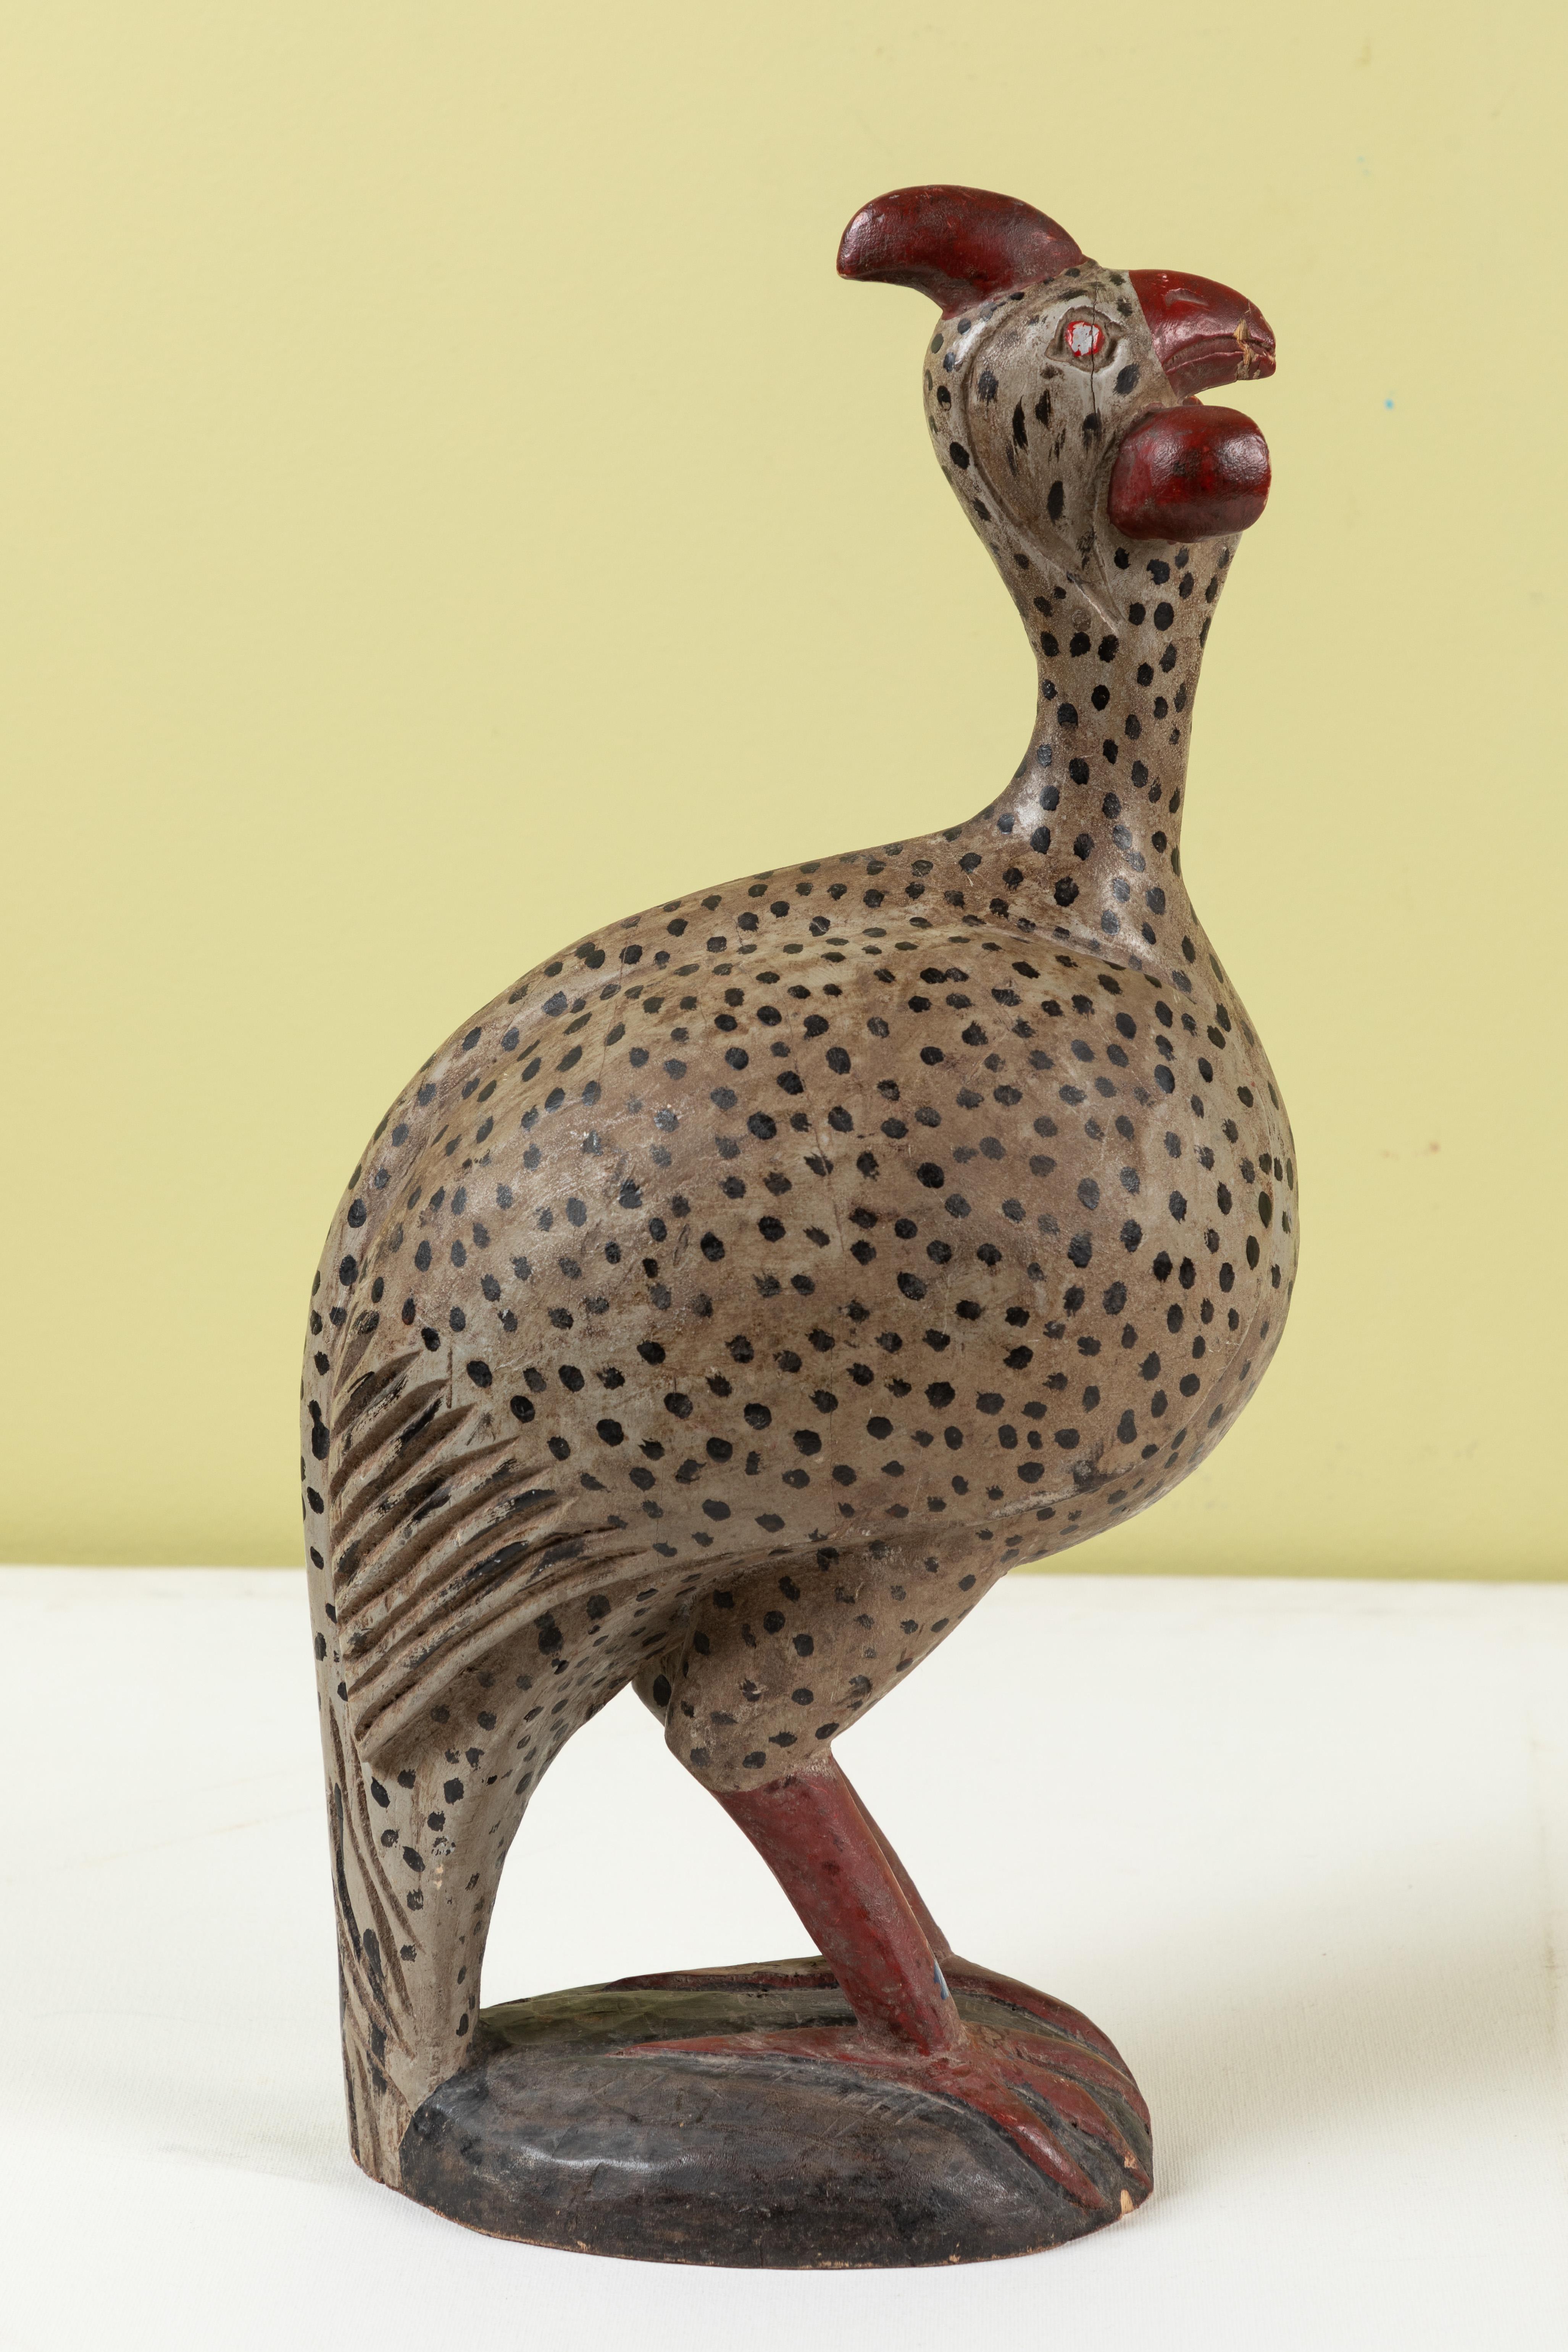 South African African Folk Art Guinea Fowl